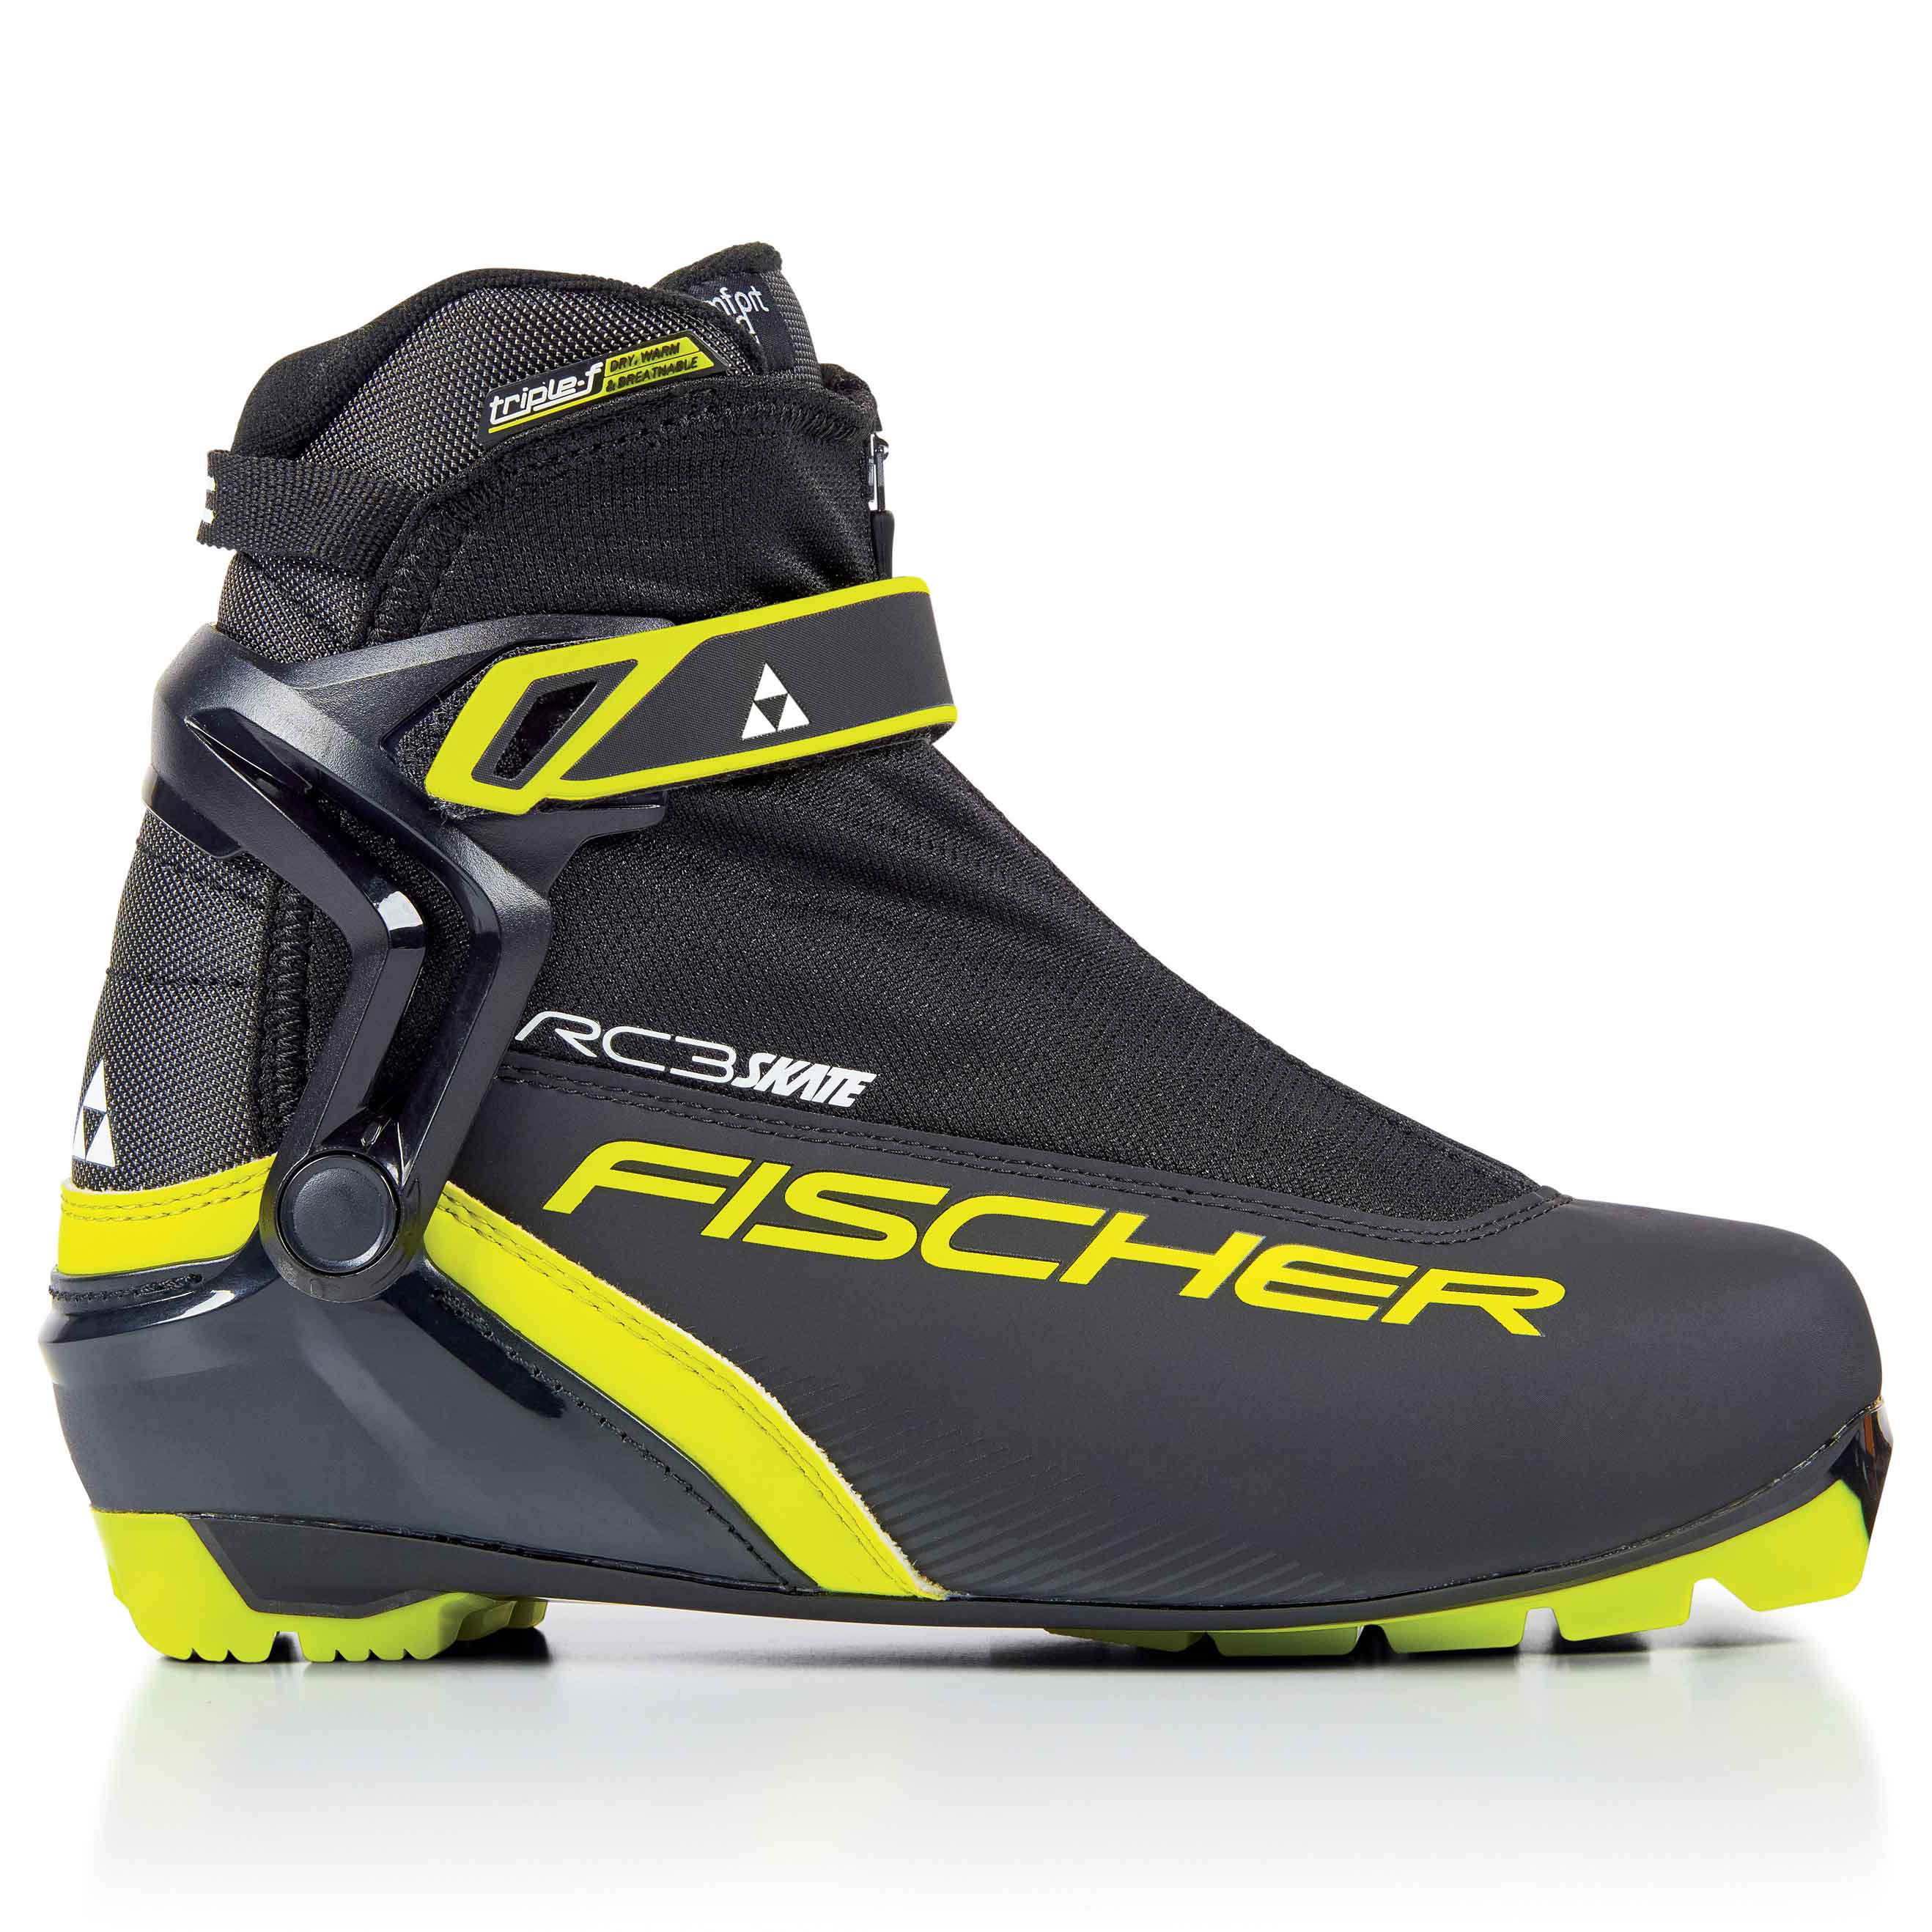 Купить лыжи с ботинками взрослые. Ботинки для беговых лыж Fischer rc3 Skate. Лыжные беговые ботинки Fischer rc3 Classic. Ботинки Фишер RC 1 Skate. Ботинки NNN Fischer rc3 Classic.